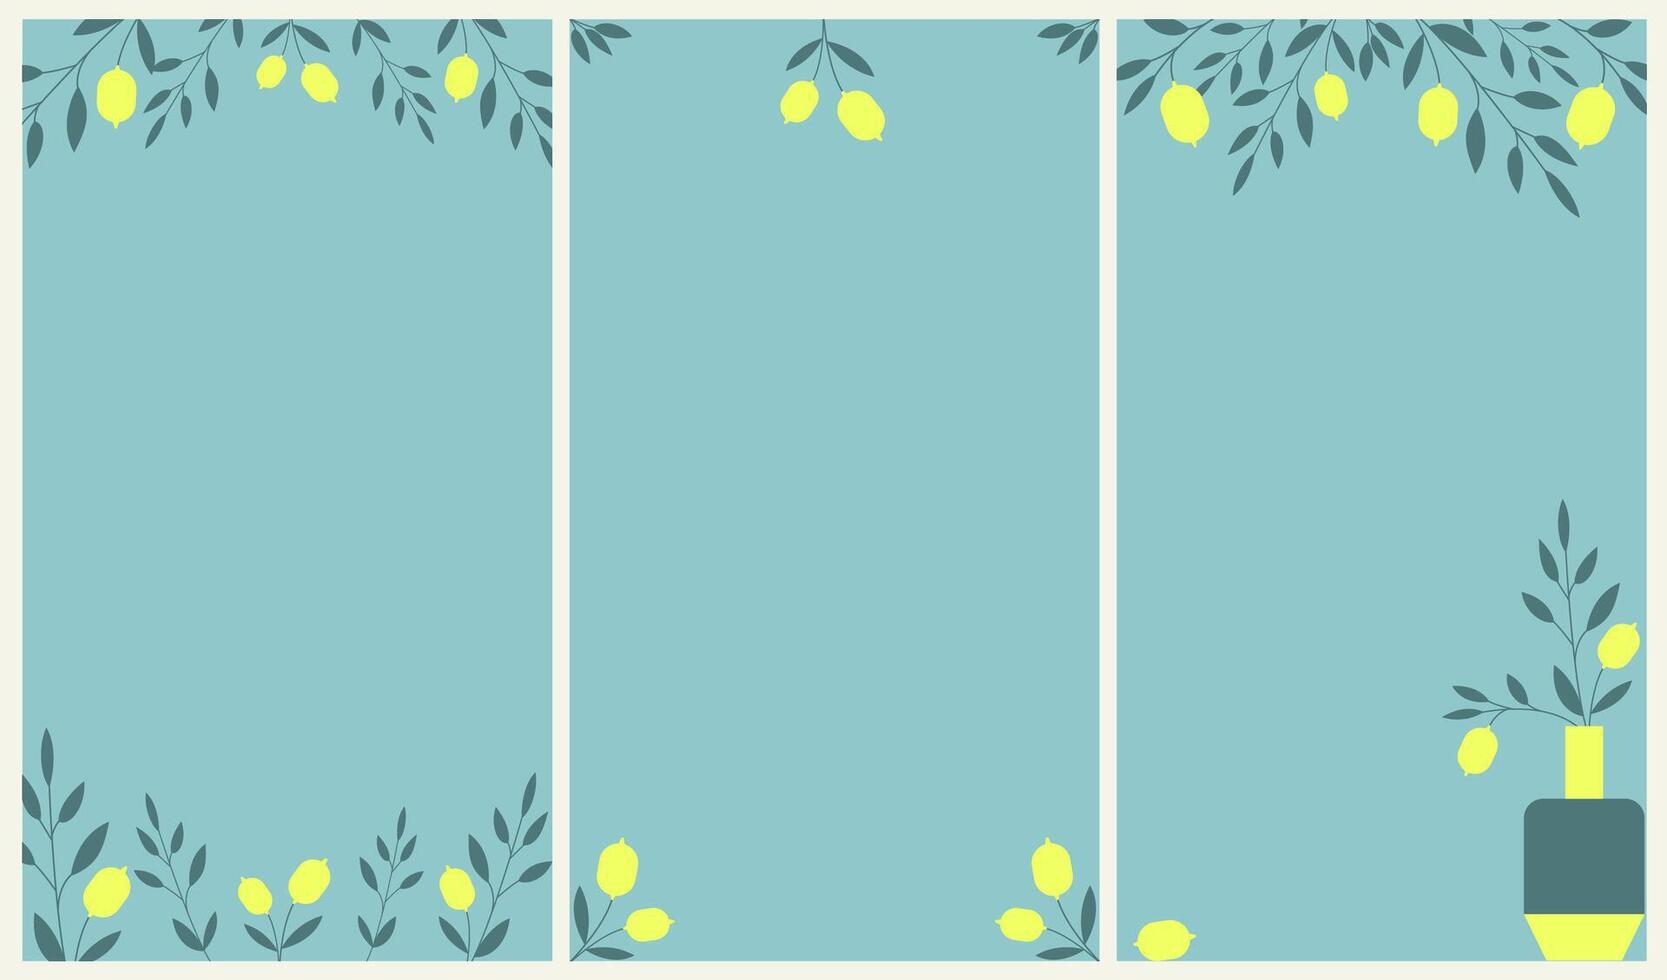 ljus citron- grenar i vaser uppsättning av bakgrunder för social media, Instagram, Tick tack eller vertikal video berättelse inlägg. vektor platt illustration.